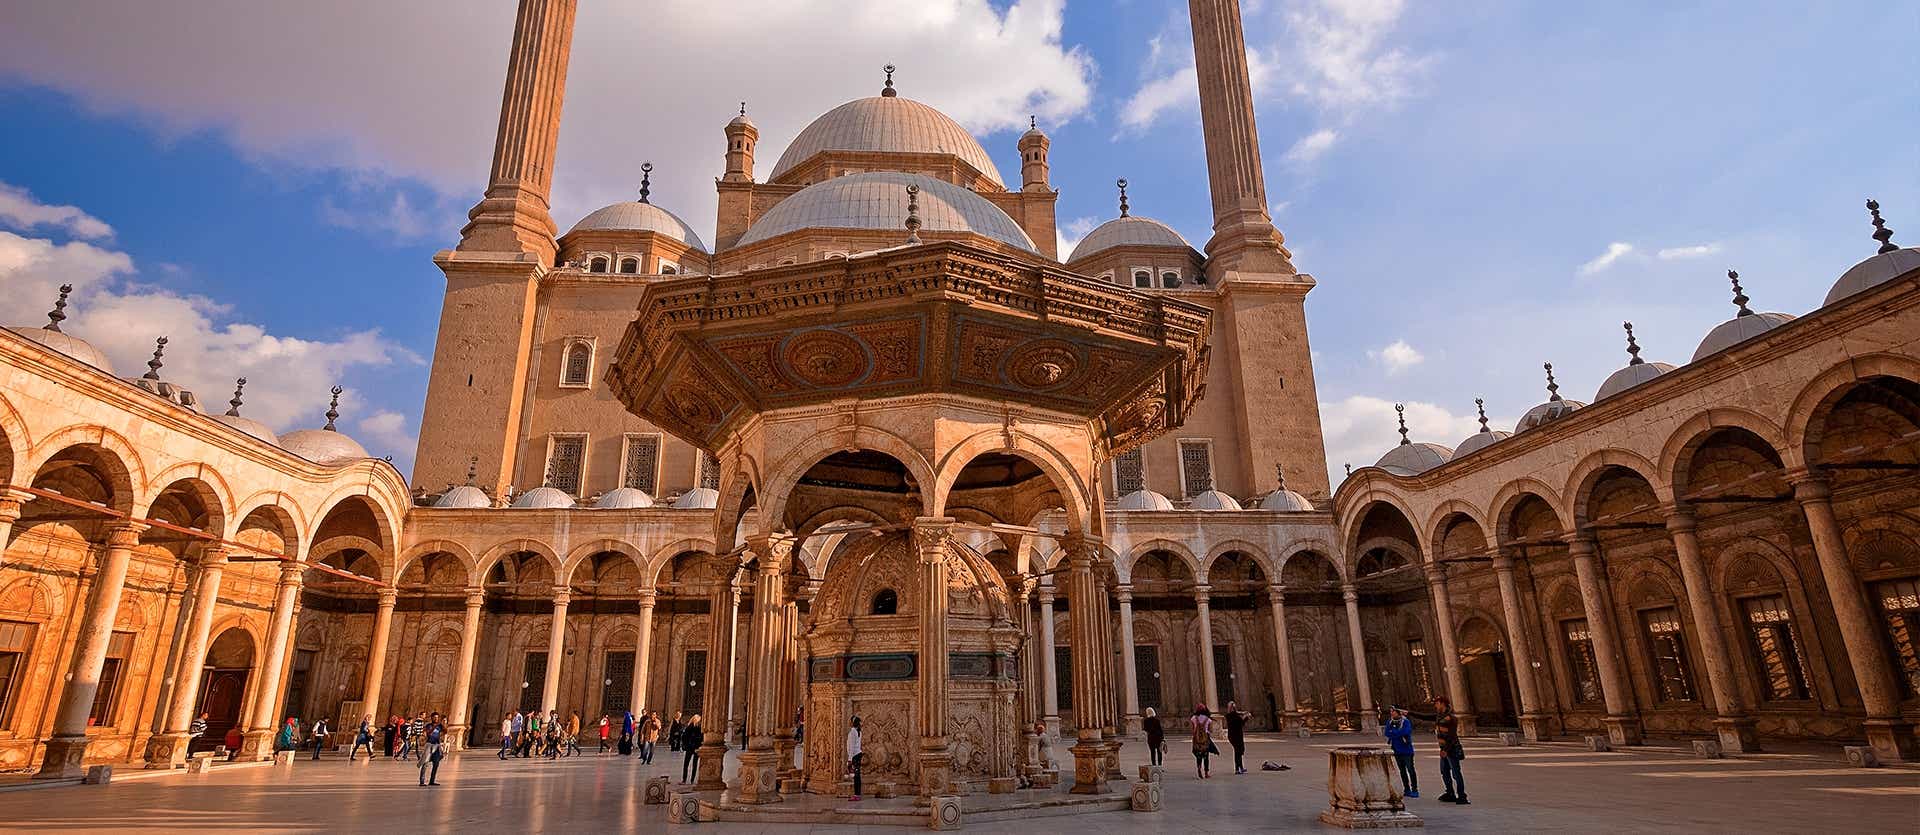 Alabaster Mosque <span class="iconos separador"></span> Cairo <span class="iconos separador"></span> Egypt